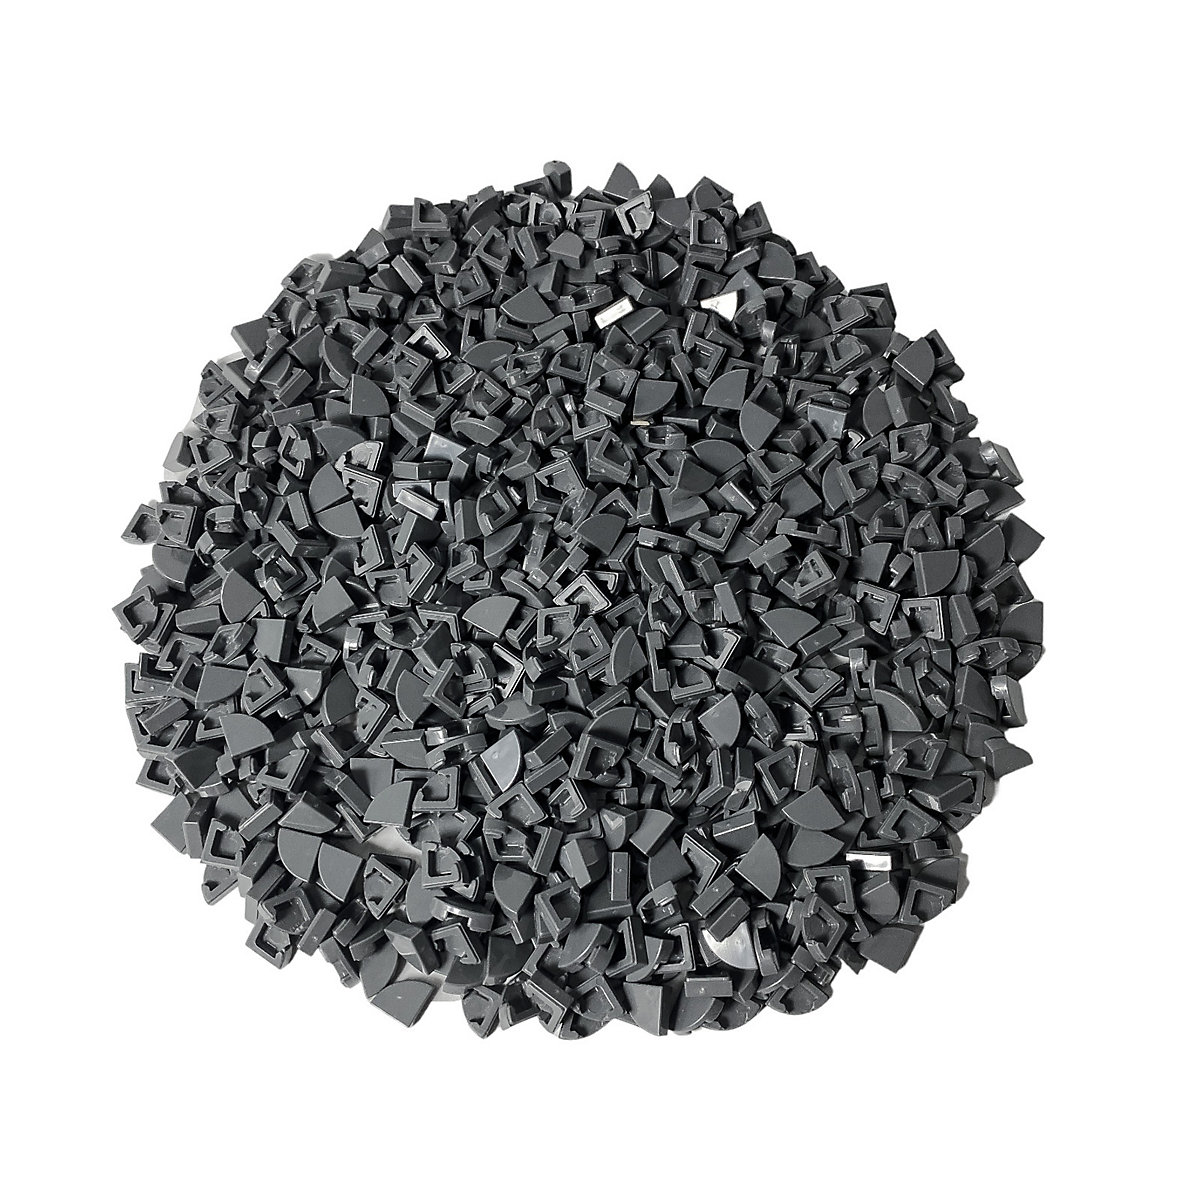 LEGO® 1x1 Fliesen Viertel Dunkelgrau Dark Bluish Grey Quarter Tile 25269 NEU! Menge 1000x